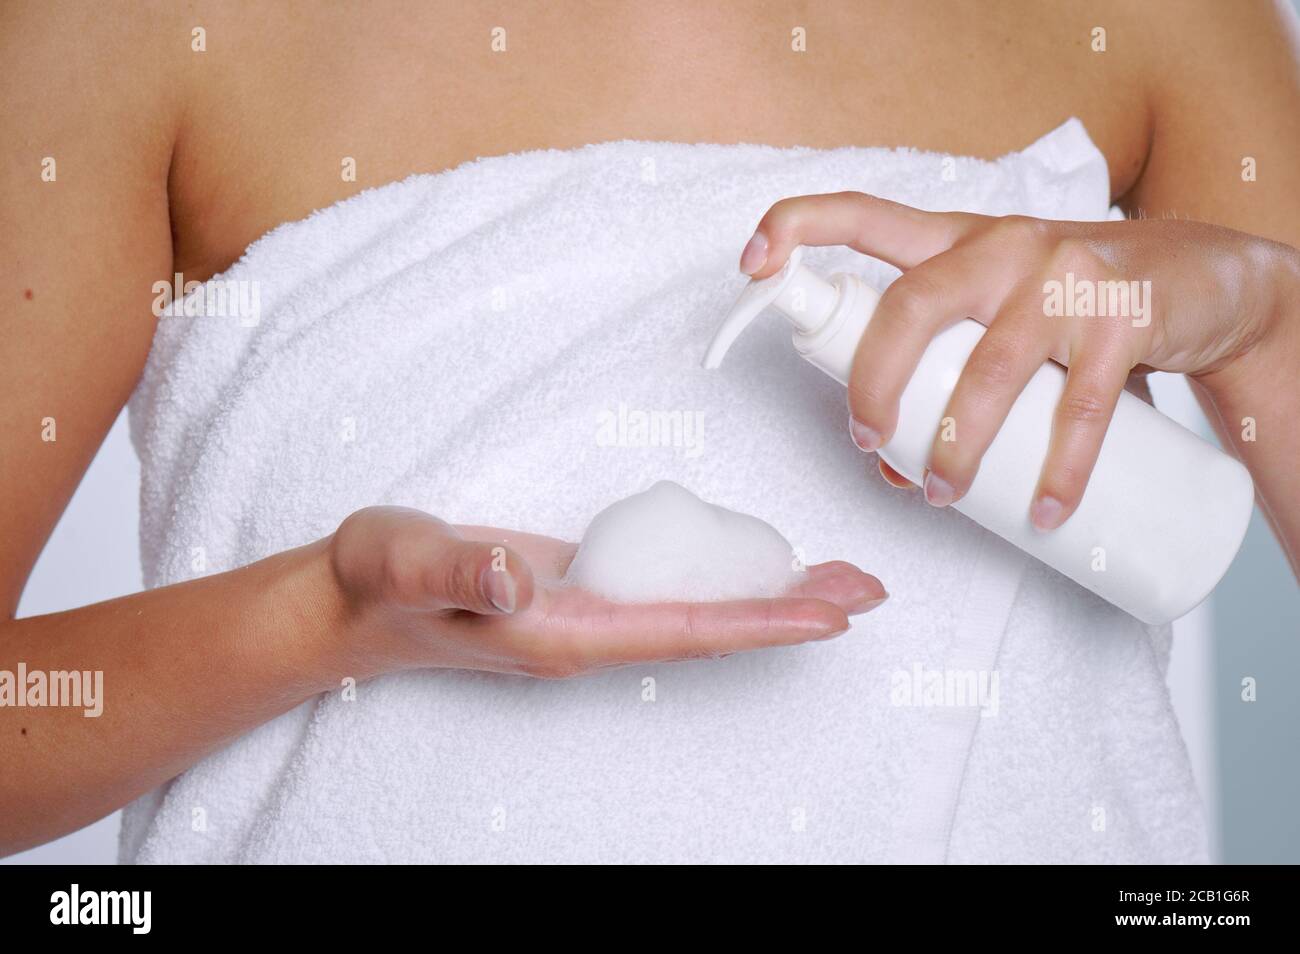 Femme pressant le savon liquide à sa main. Flacon de savon blanc avec distributeur à la main. Banque D'Images